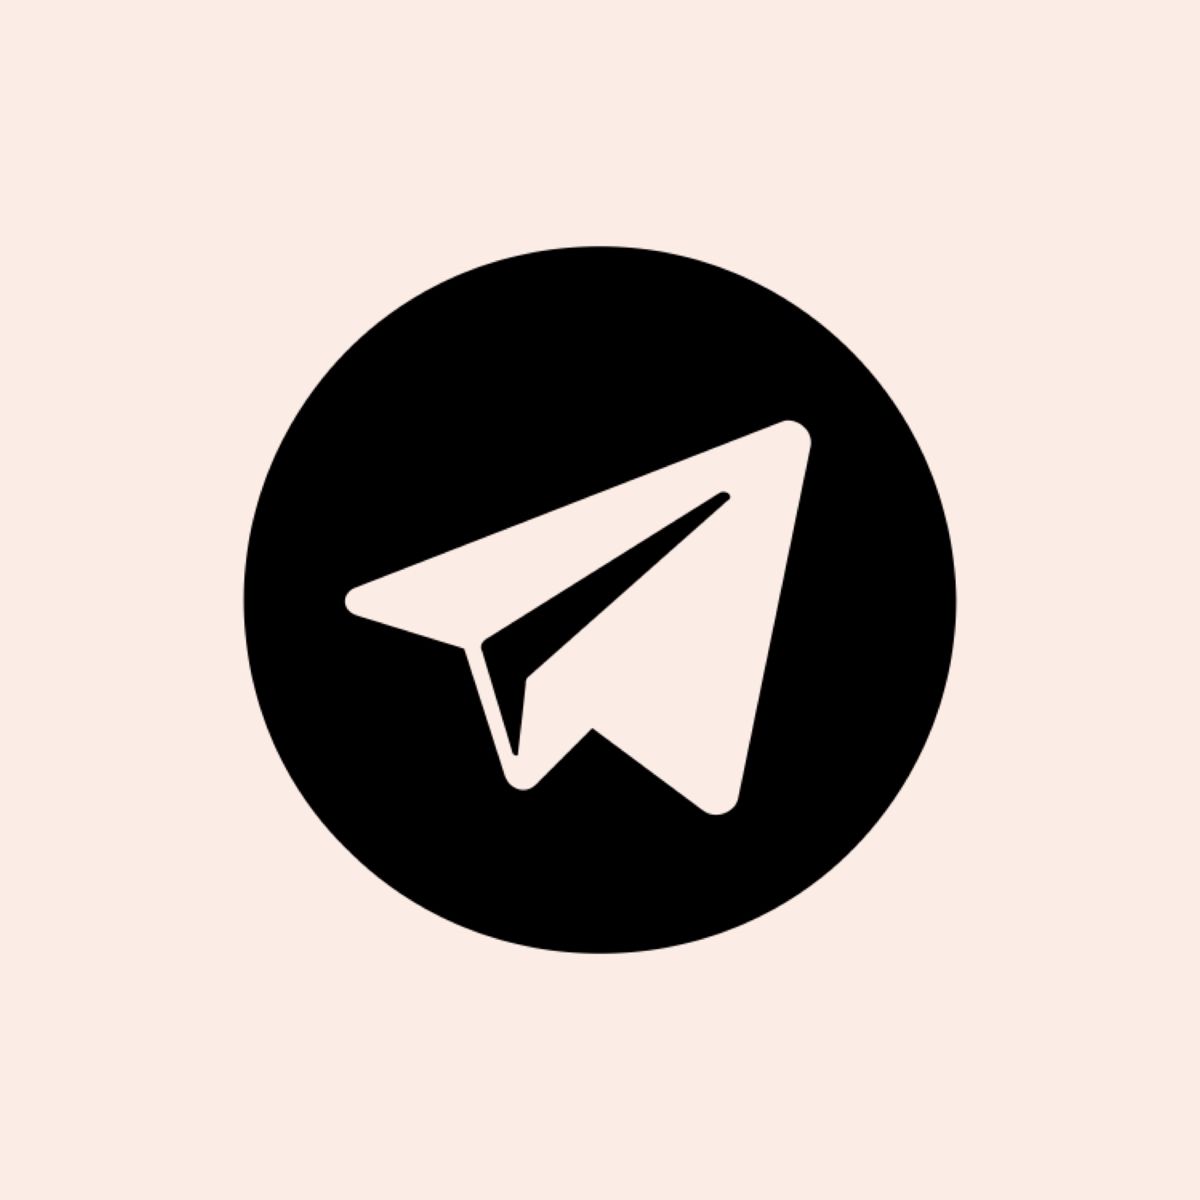 Telegram. Ios icon, App icon, iPhone app design